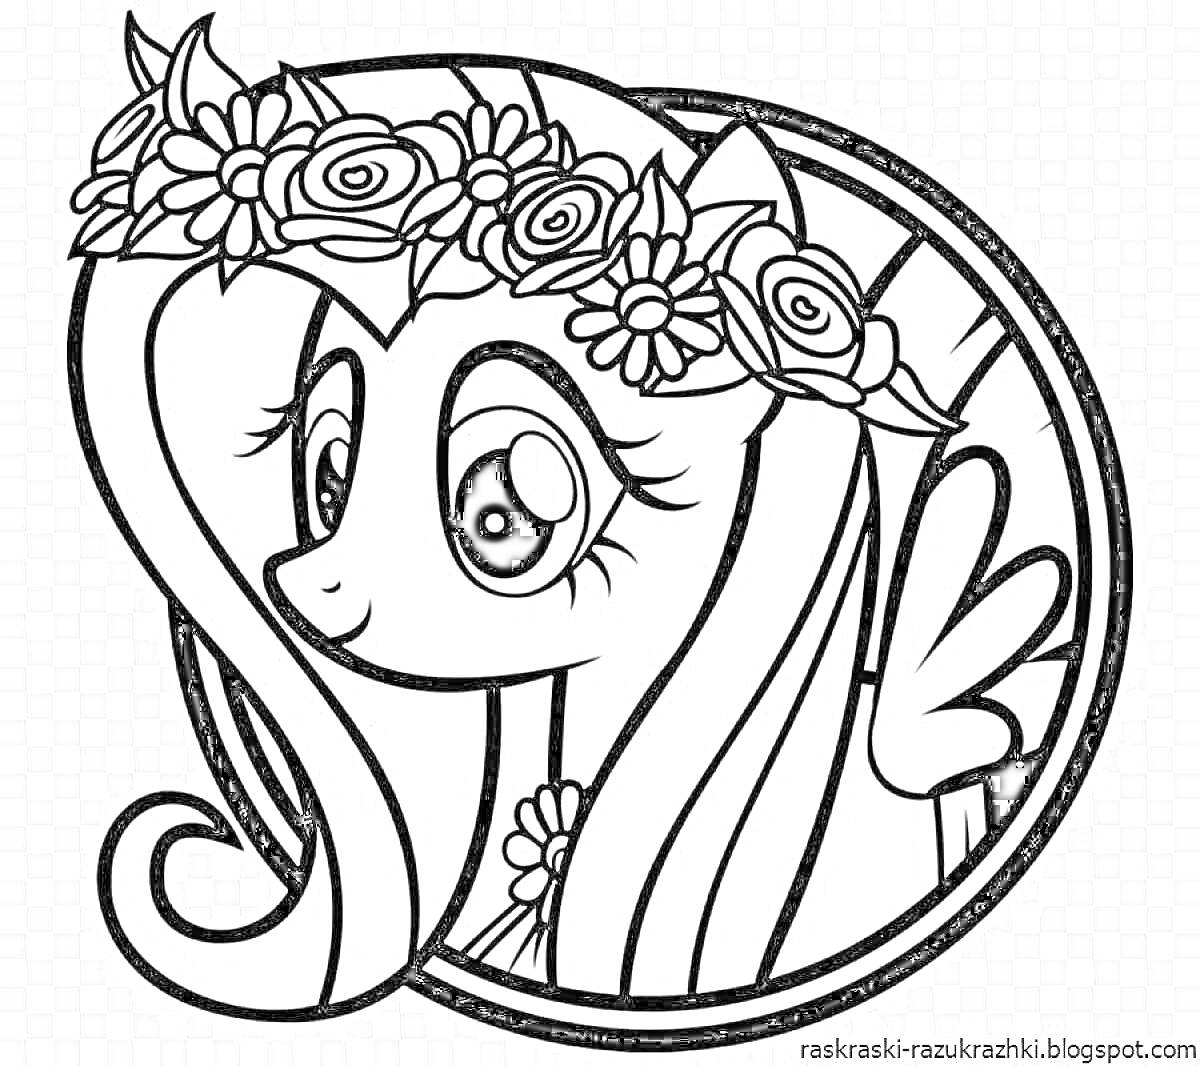 Раскраска Поняшка с длинной гривой и цветочным венком на голове